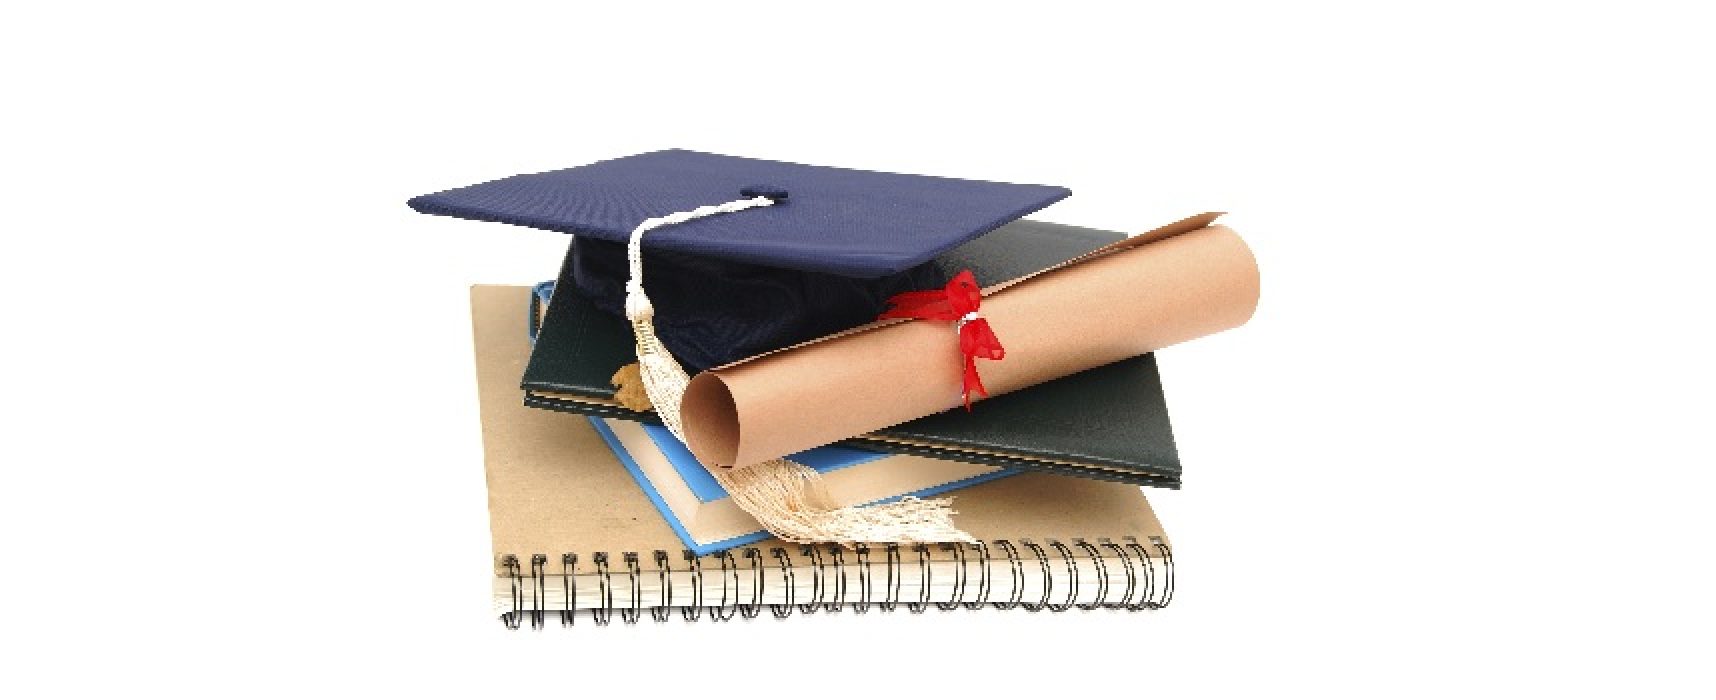 Approvata assegnazione borse di studio per gli studenti delle scuole superiori